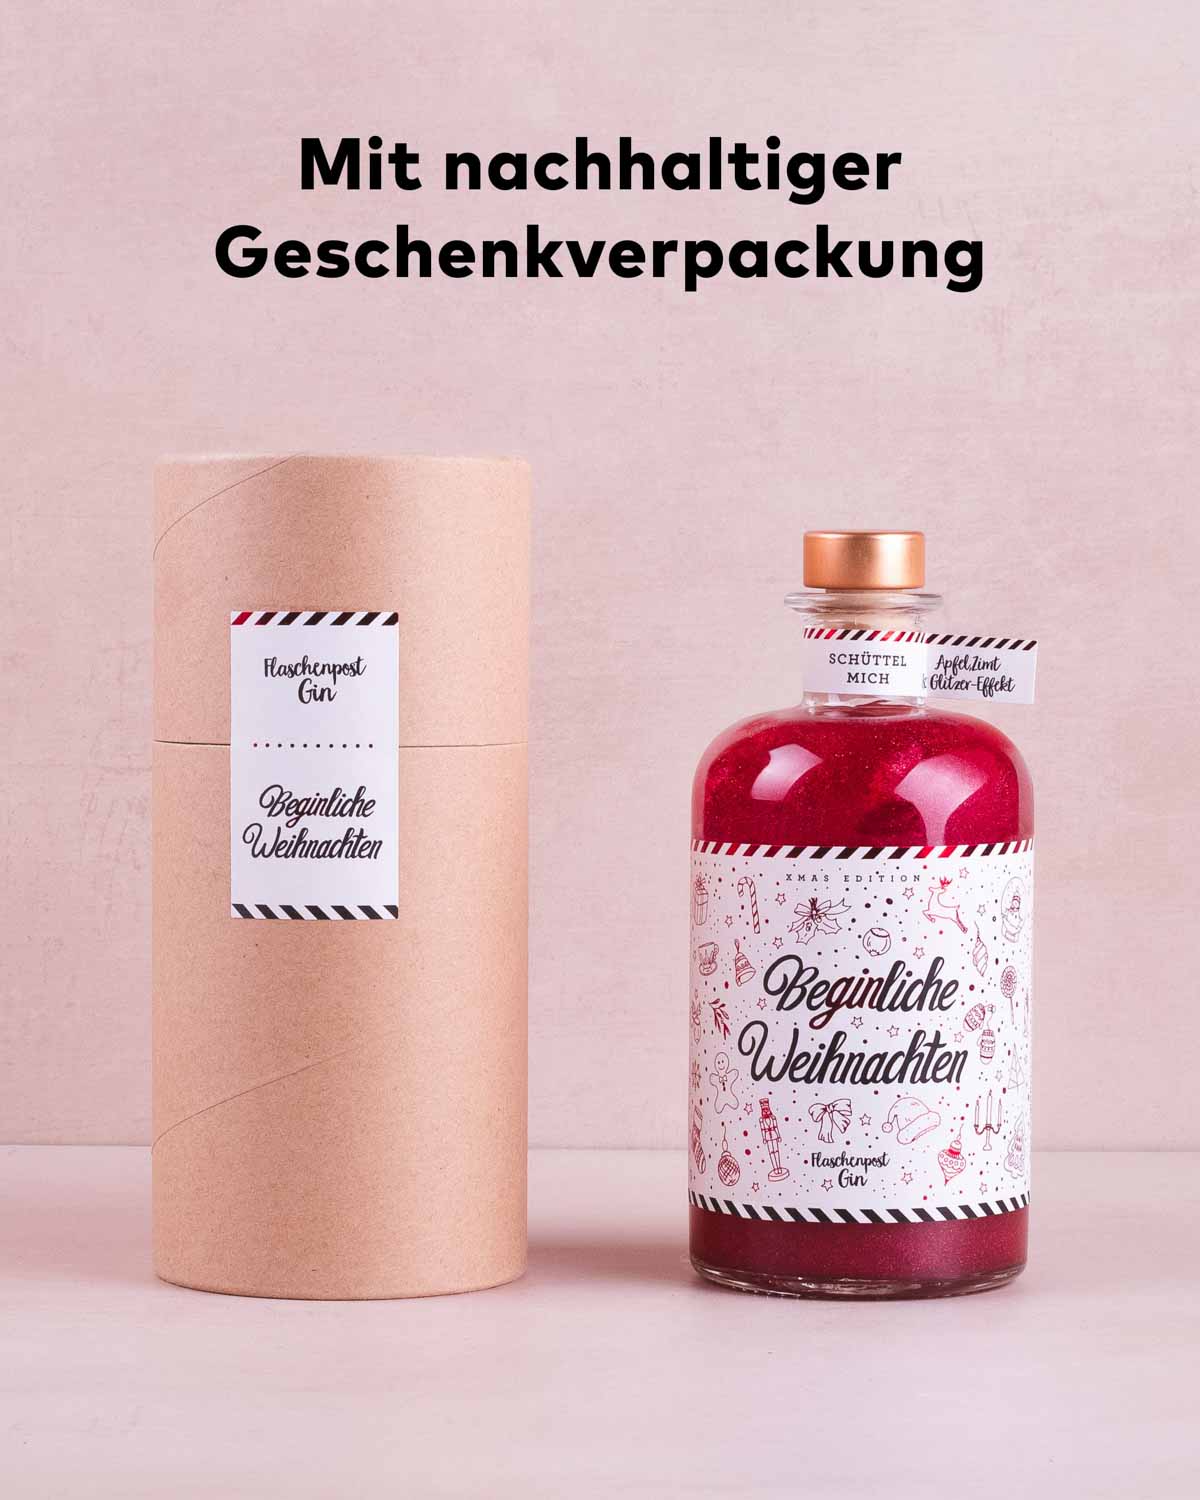 Links im Bild steht die nachhaltige Geschenkverpackung vor neutralem Hintergrund, rechts daneben die dazugehörige Beginliche Weihnachten Limited Edition.